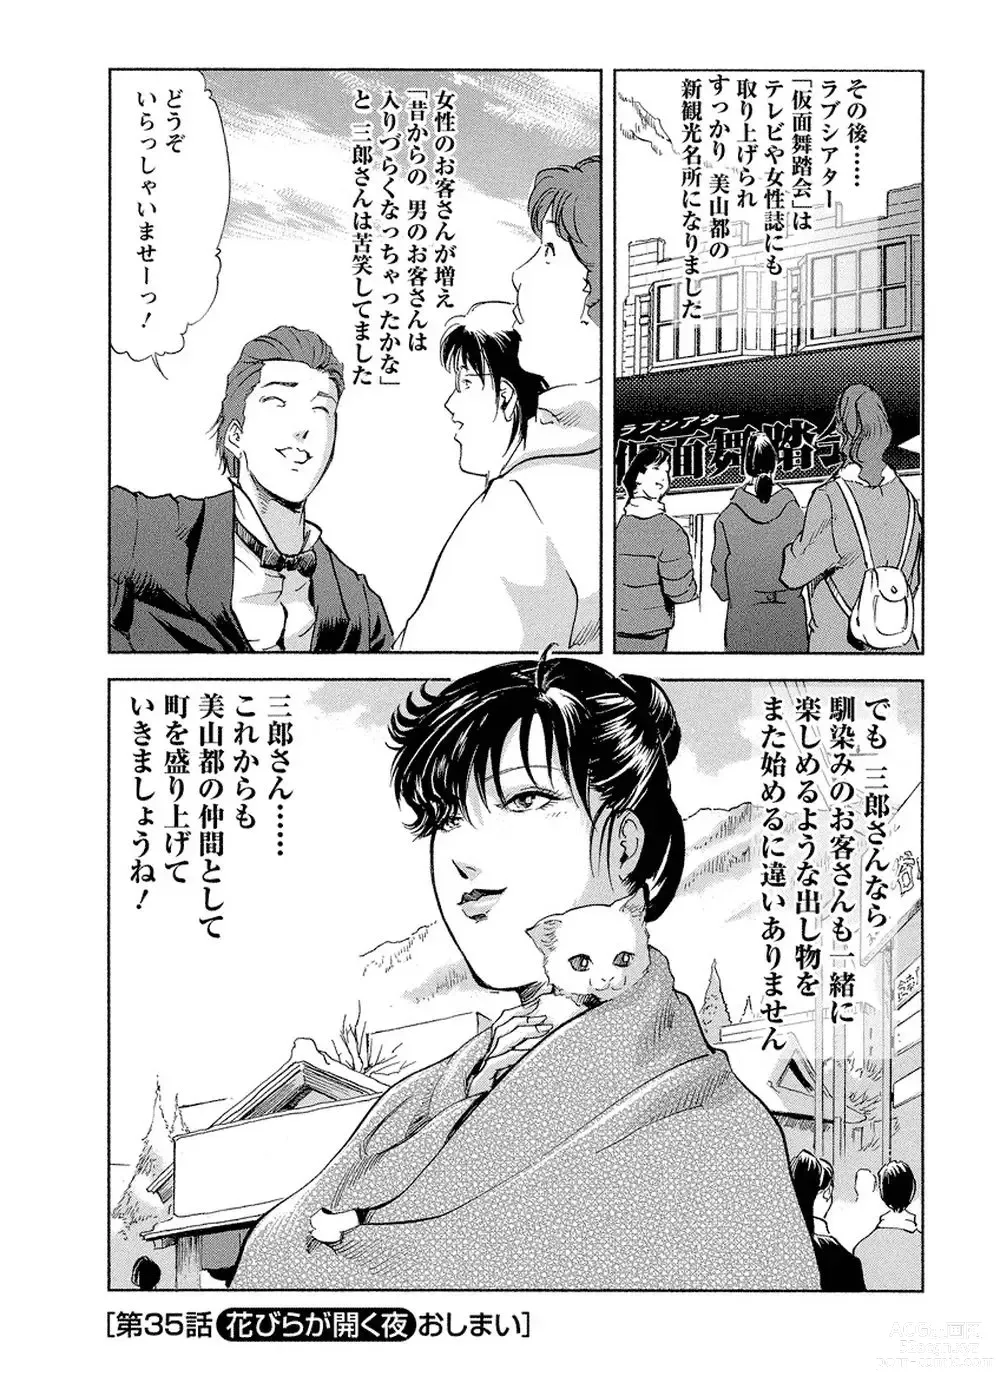 Page 211 of manga Tsuyako no Yu Vol.4